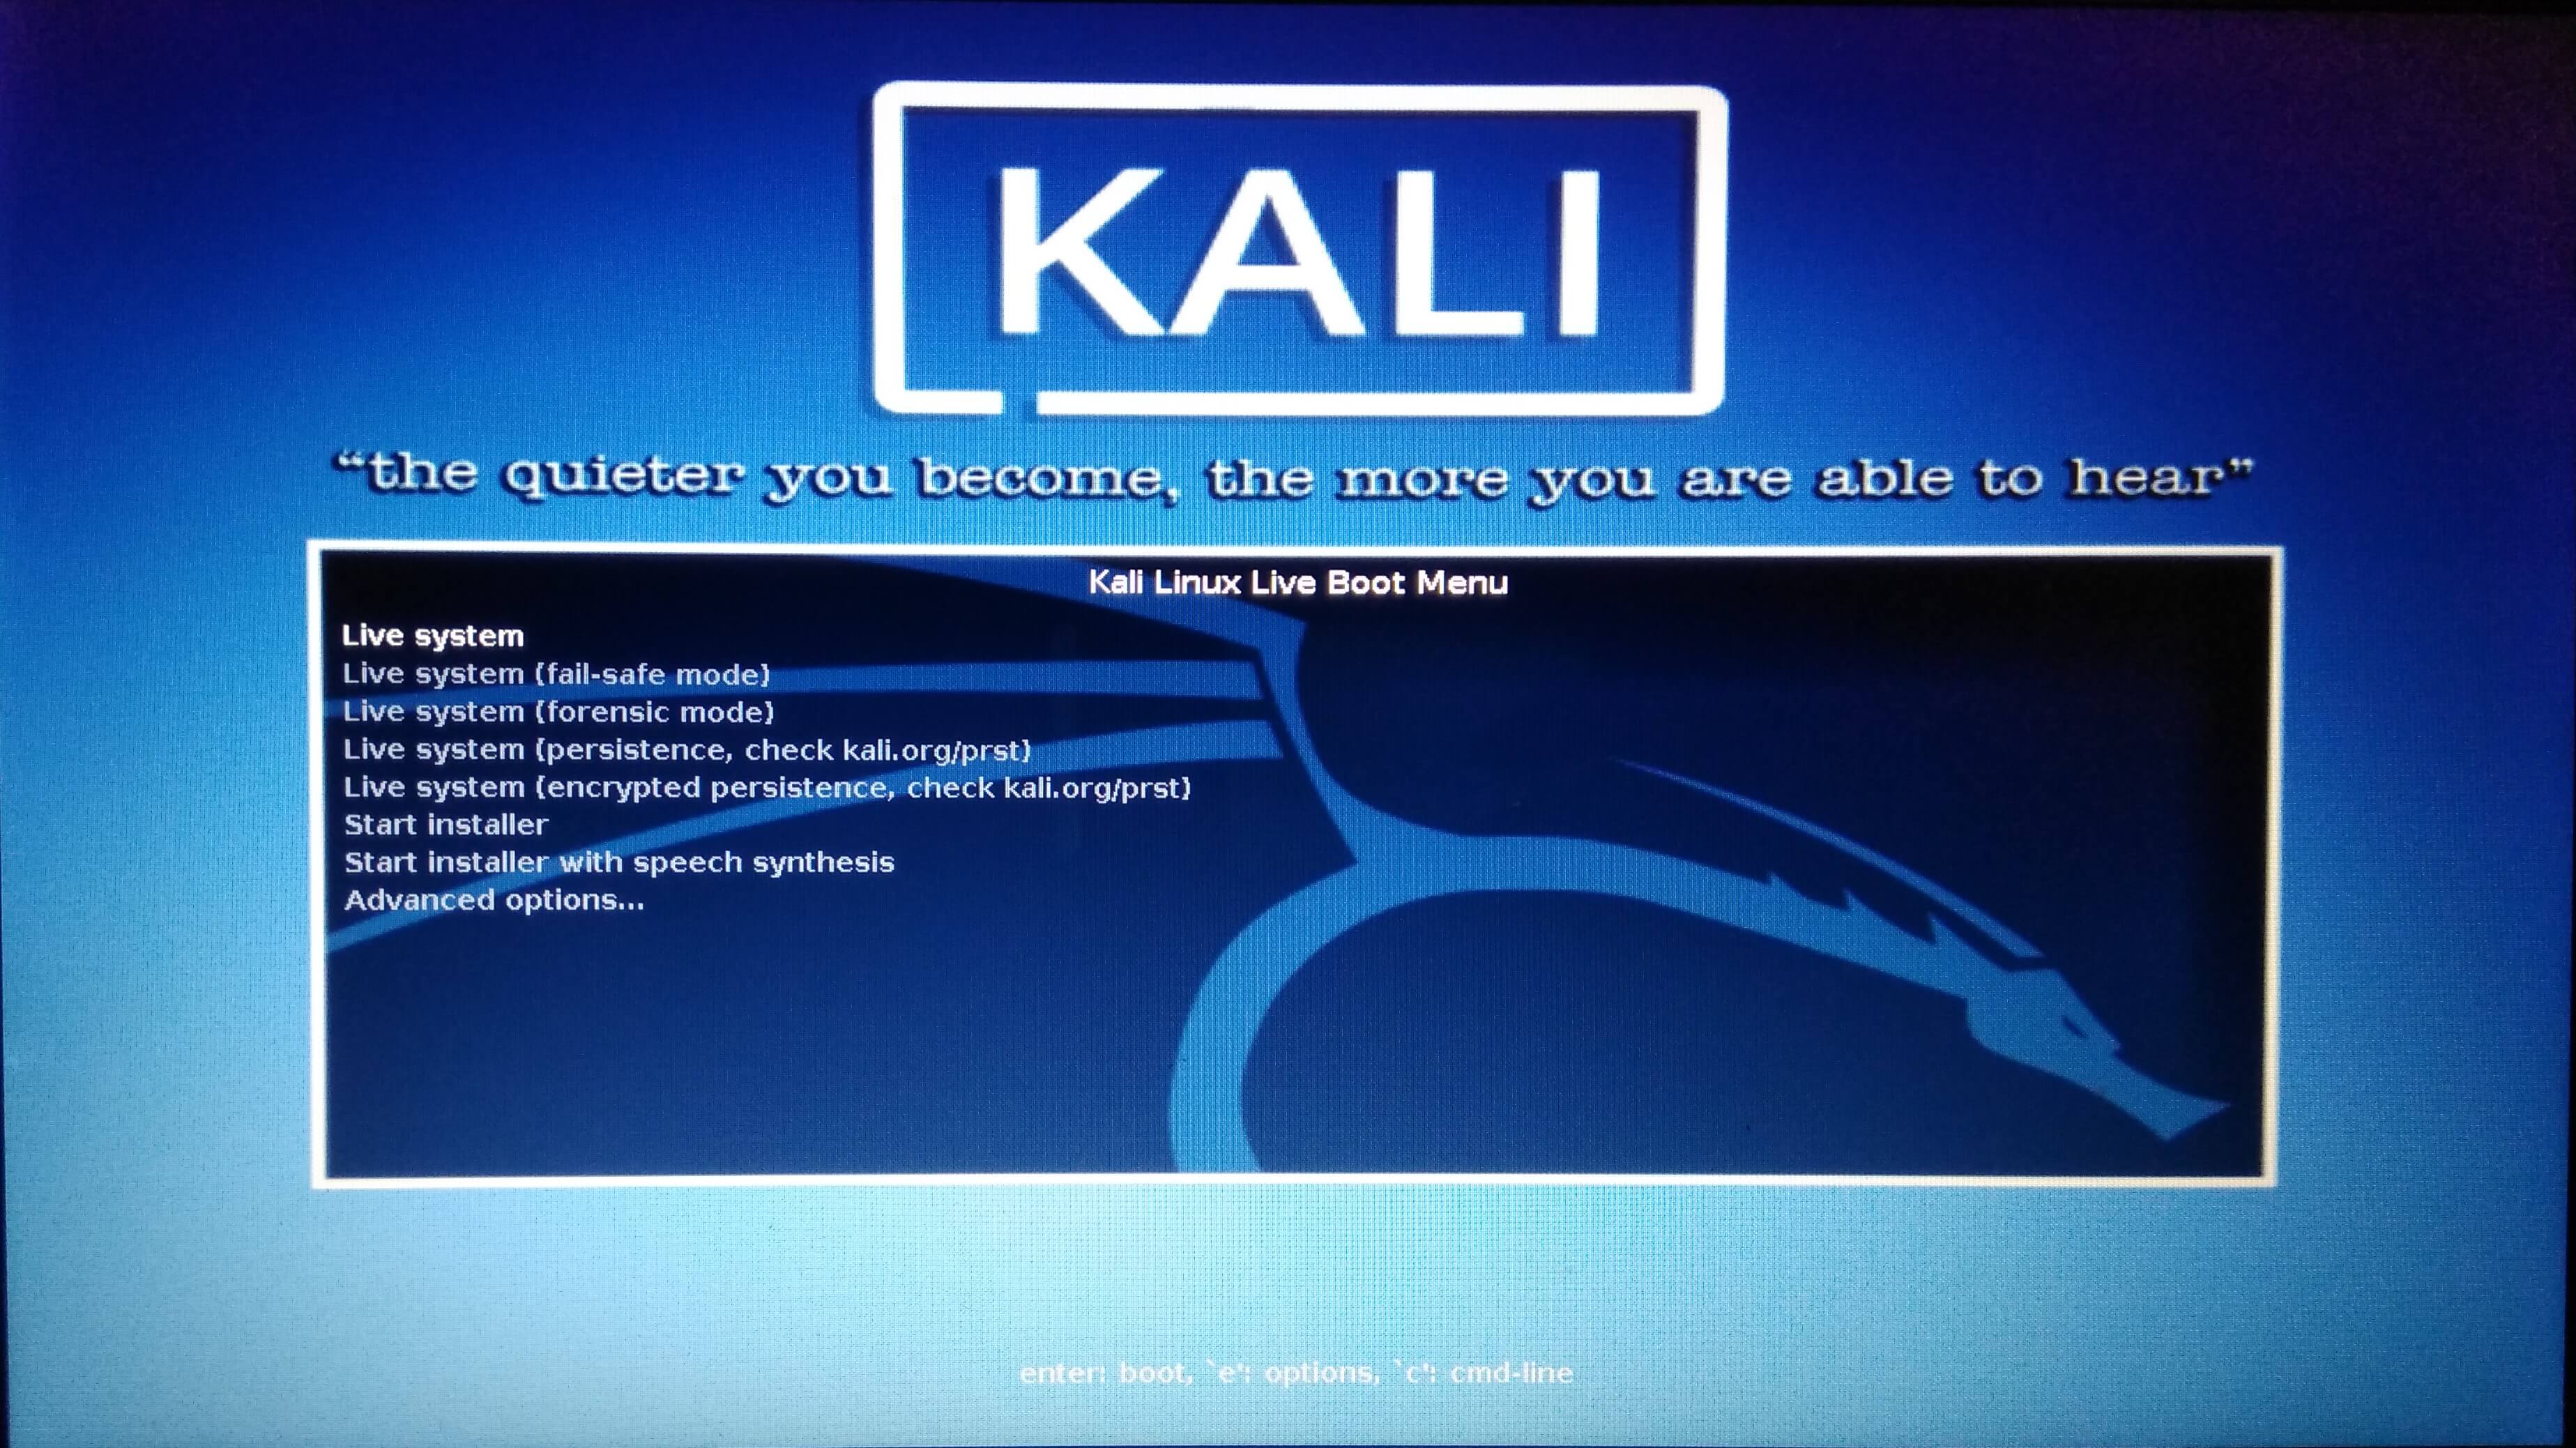 روش های مختلف نصب کالی لینوکس (Kali Linux) - نصب لینوکس کالی با استفاده از Bootable USB